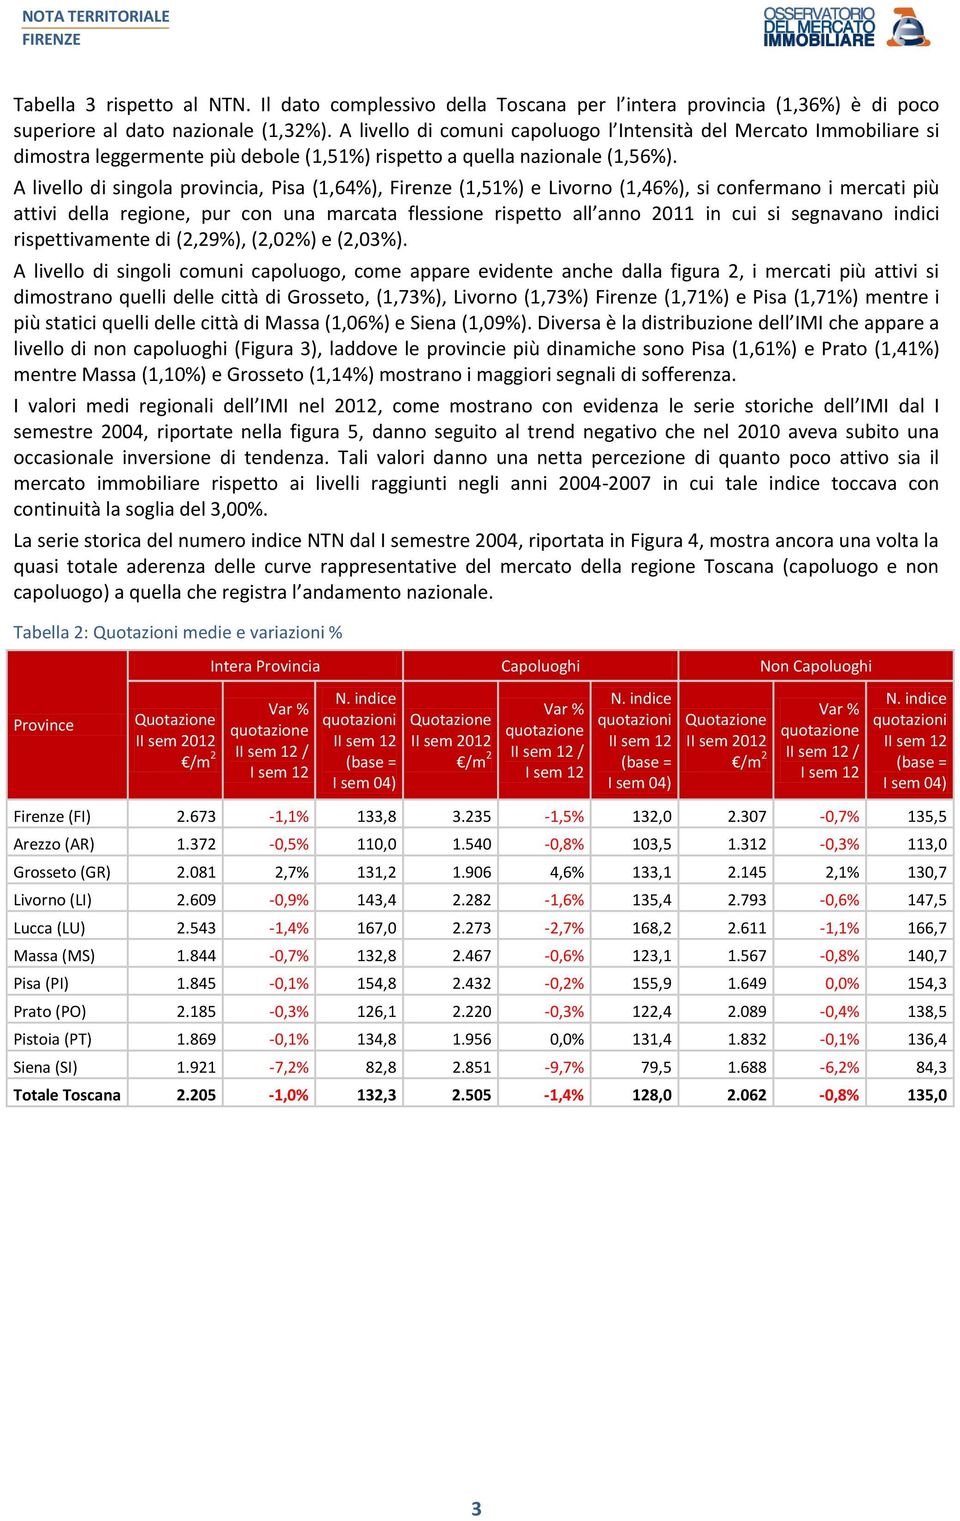 A livello di singola provincia, Pisa (1,64%), Firenze (1,51%) e Livorno (1,46%), si confermano i mercati più attivi della regione, pur con una marcata flessione rispetto all anno 2011 in cui si